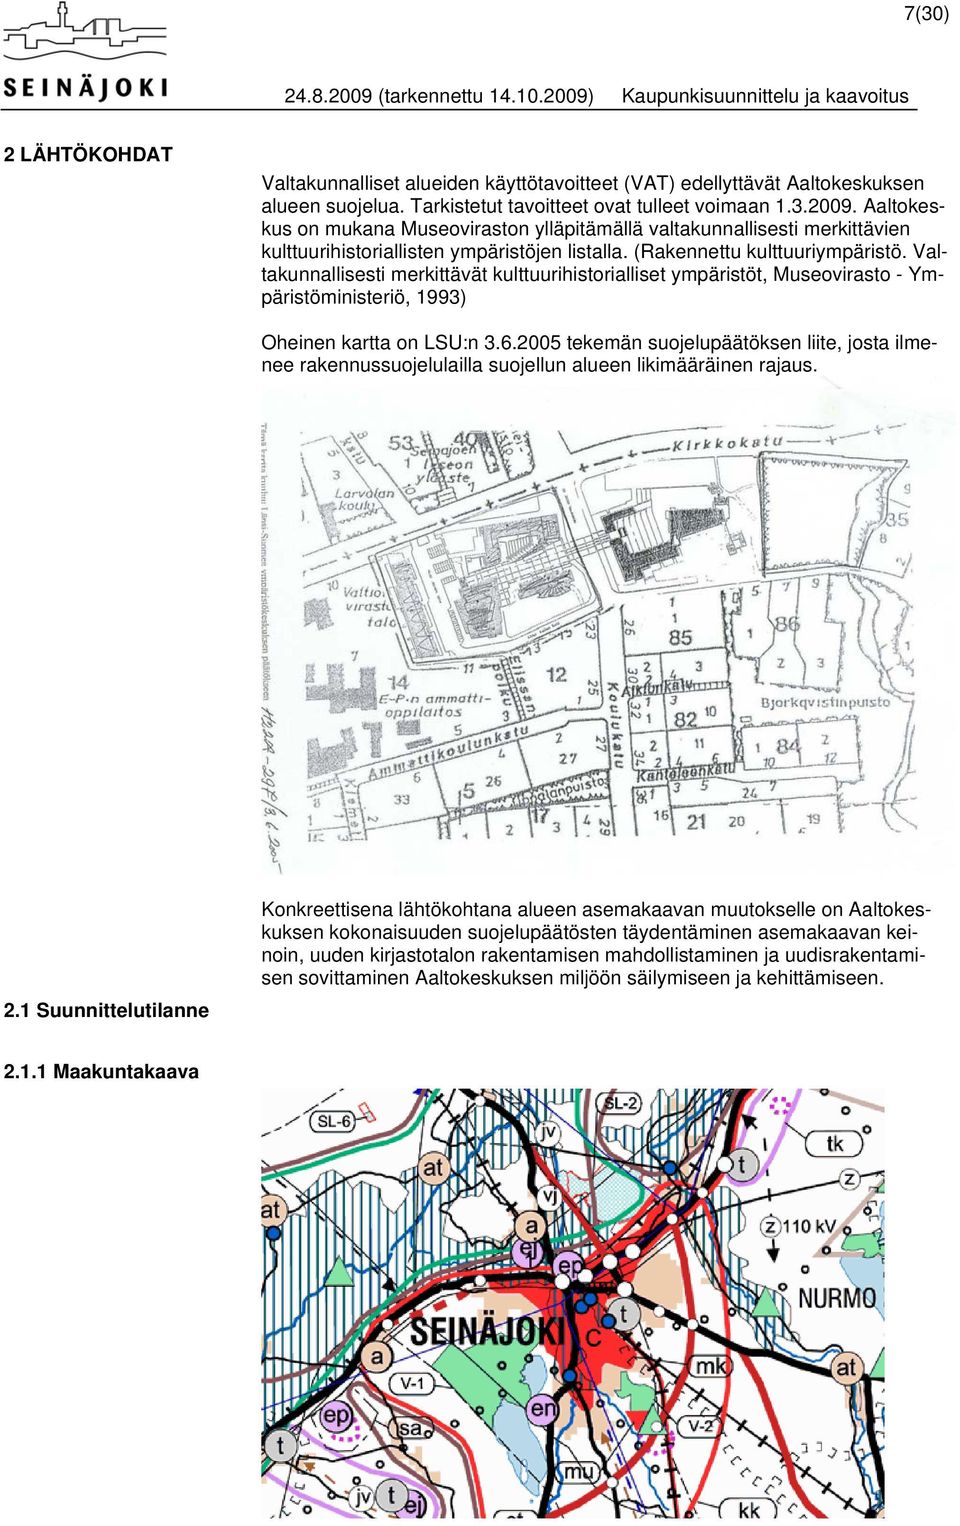 Valtakunnallisesti merkittävät kulttuurihistorialliset ympäristöt, Museovirasto - Ympäristöministeriö, 1993) Oheinen kartta on LSU:n 3.6.